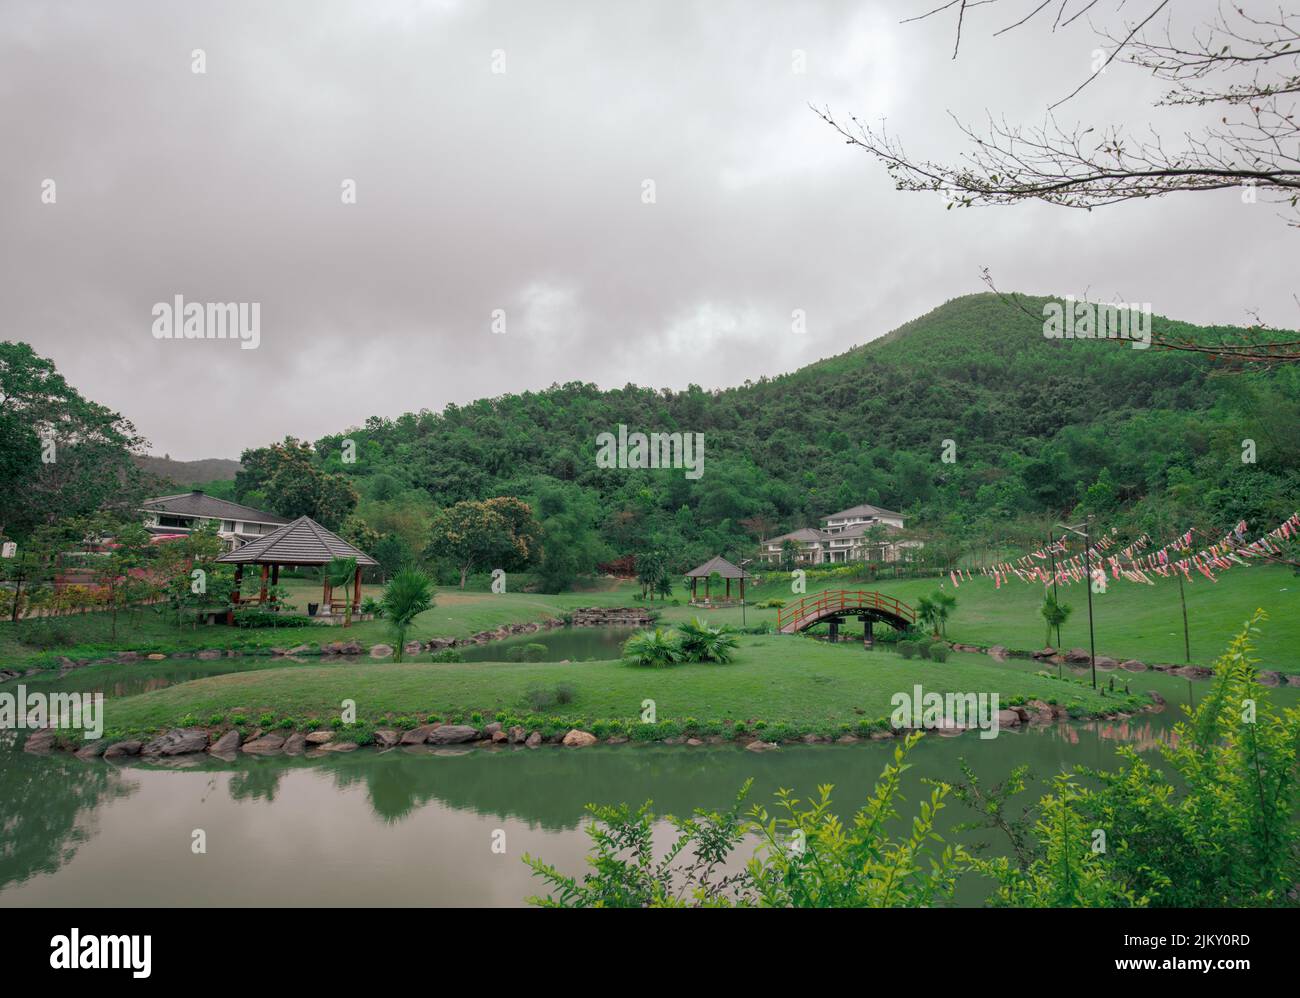 Blick auf eine schöne Grünanlage mit Pavillons und Hügeln und einem Teich in der Mitte Stockfoto